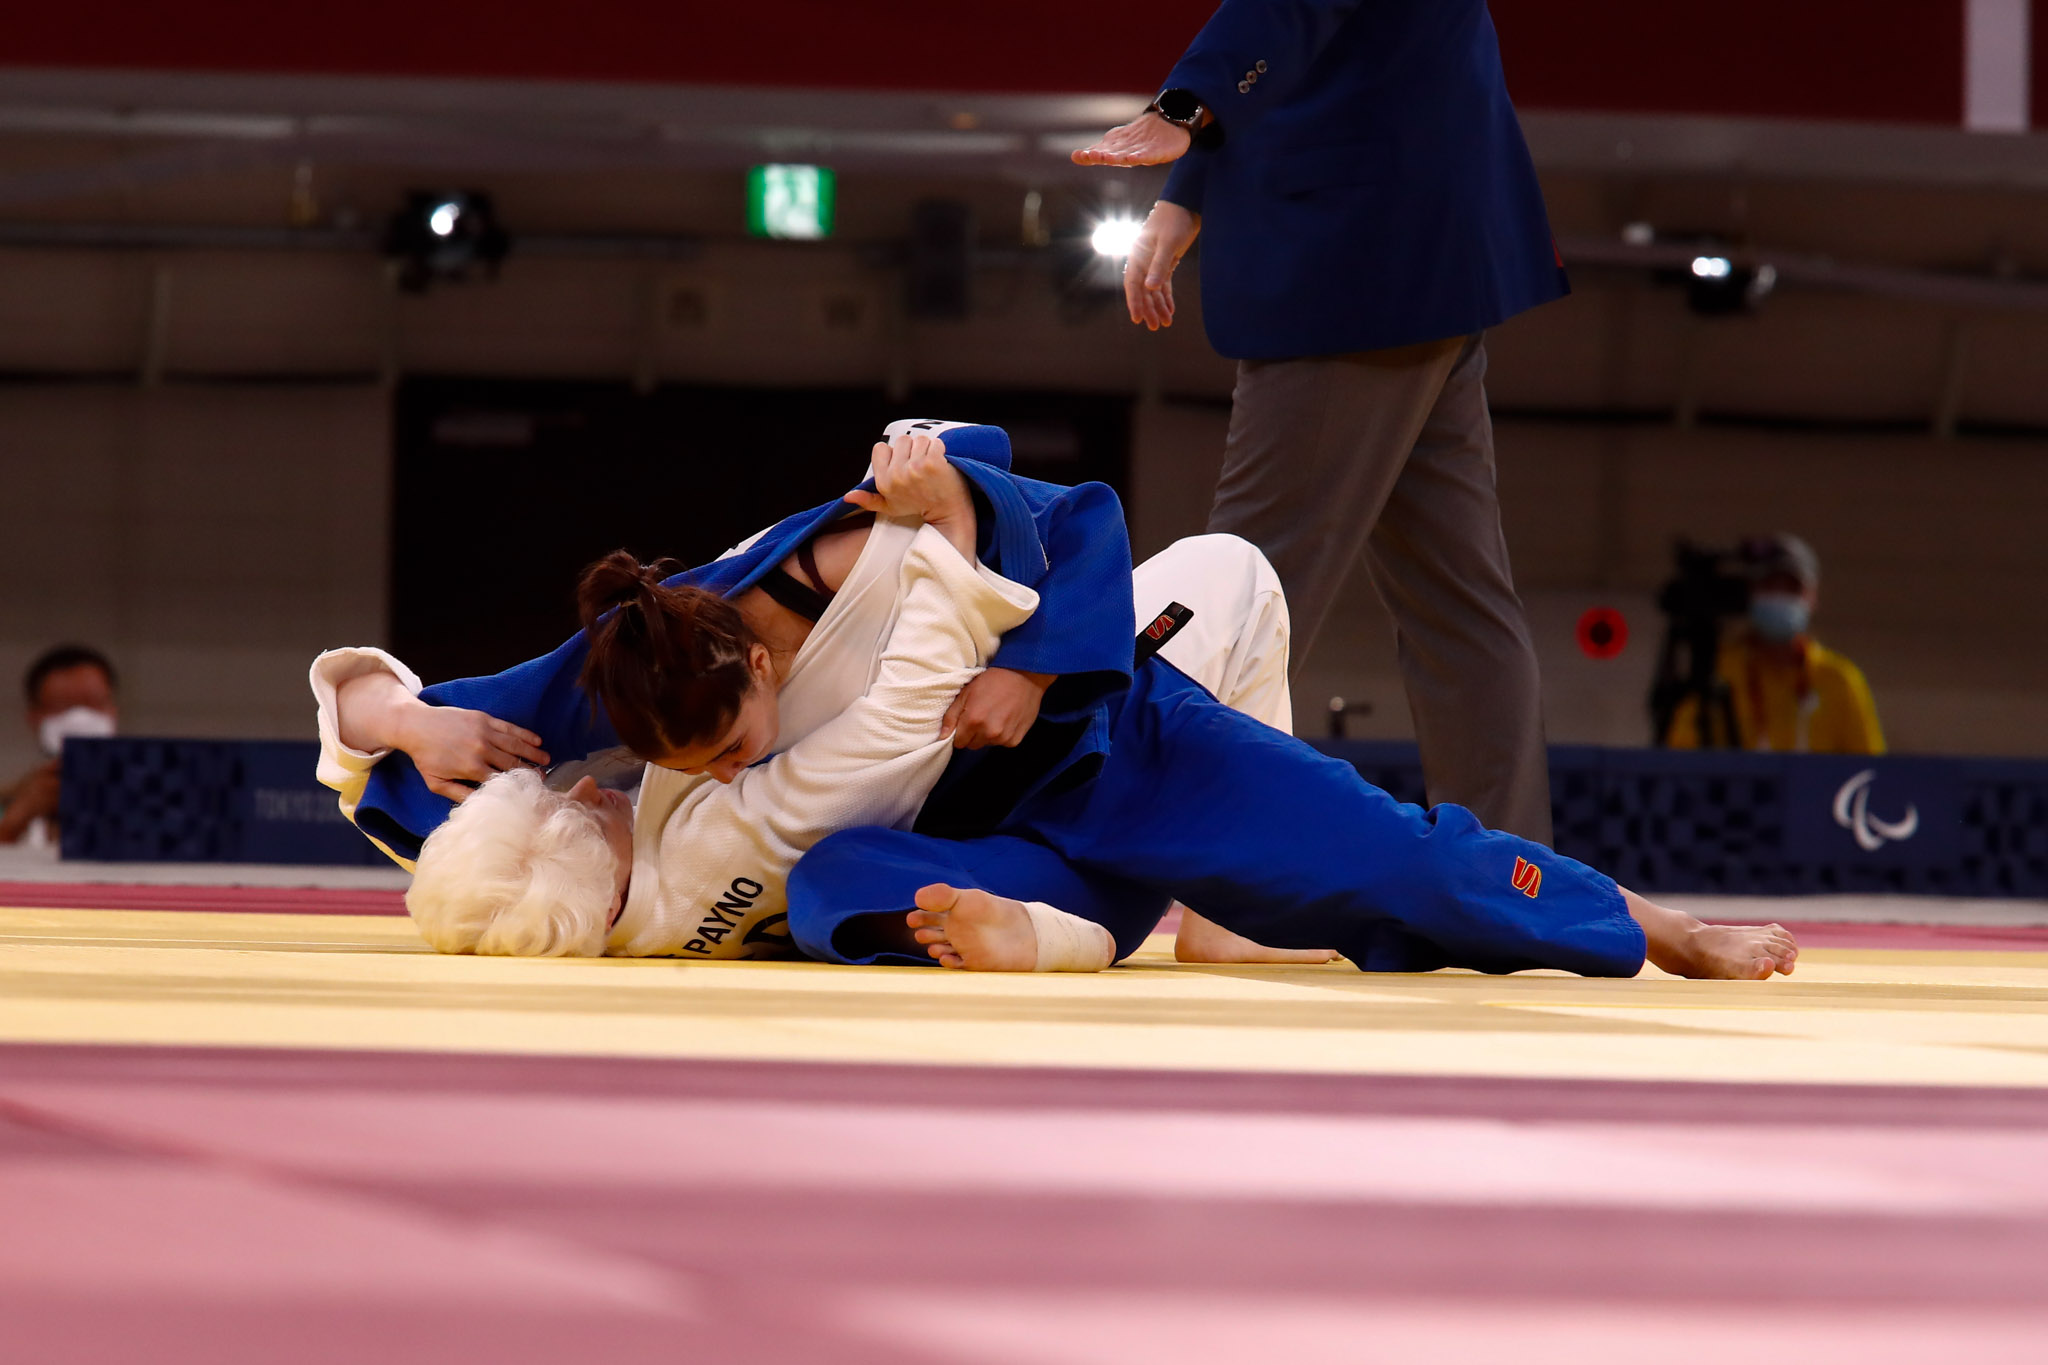 Começa a época dos judocas paraolímpicos espanhóis no Grande Prémio de Portugal — site ONCE